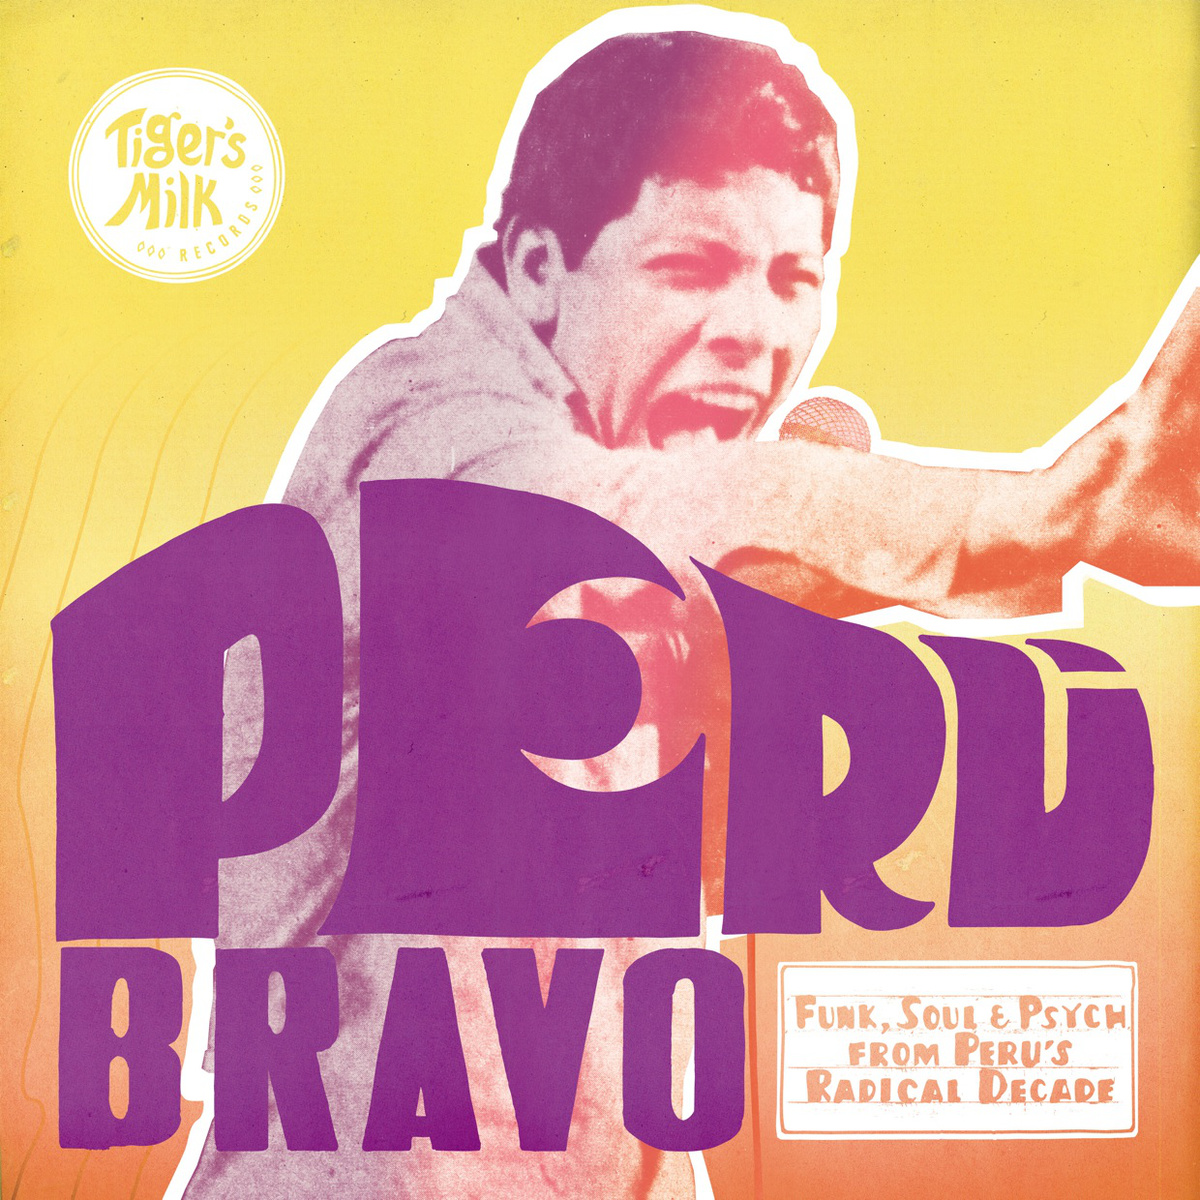 Peru Bravo: Funk, Soul and Psych from Peru's Radical Decade